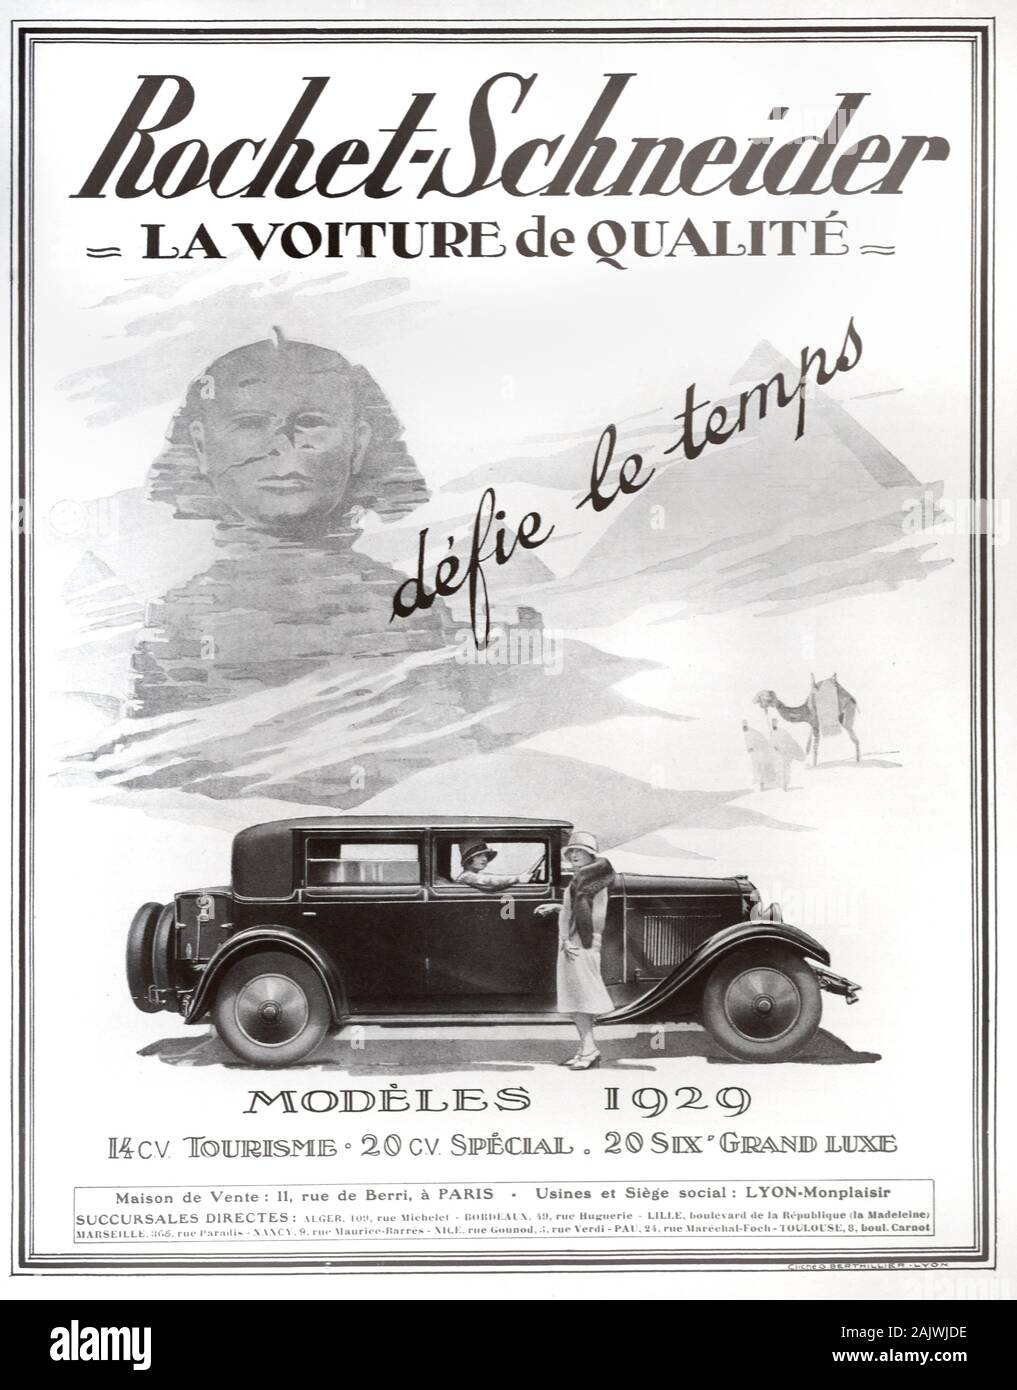 Vecchio annuncio, vintage o annuncio pubblicitario per il 1929 i modelli di lusso francese Rochet-Schneider auto annuncio 1929. Il modello di lusso è visualizzata con due enca donne contro uno sfondo delle piramidi e la Sfinge di antico Egitto. Foto Stock